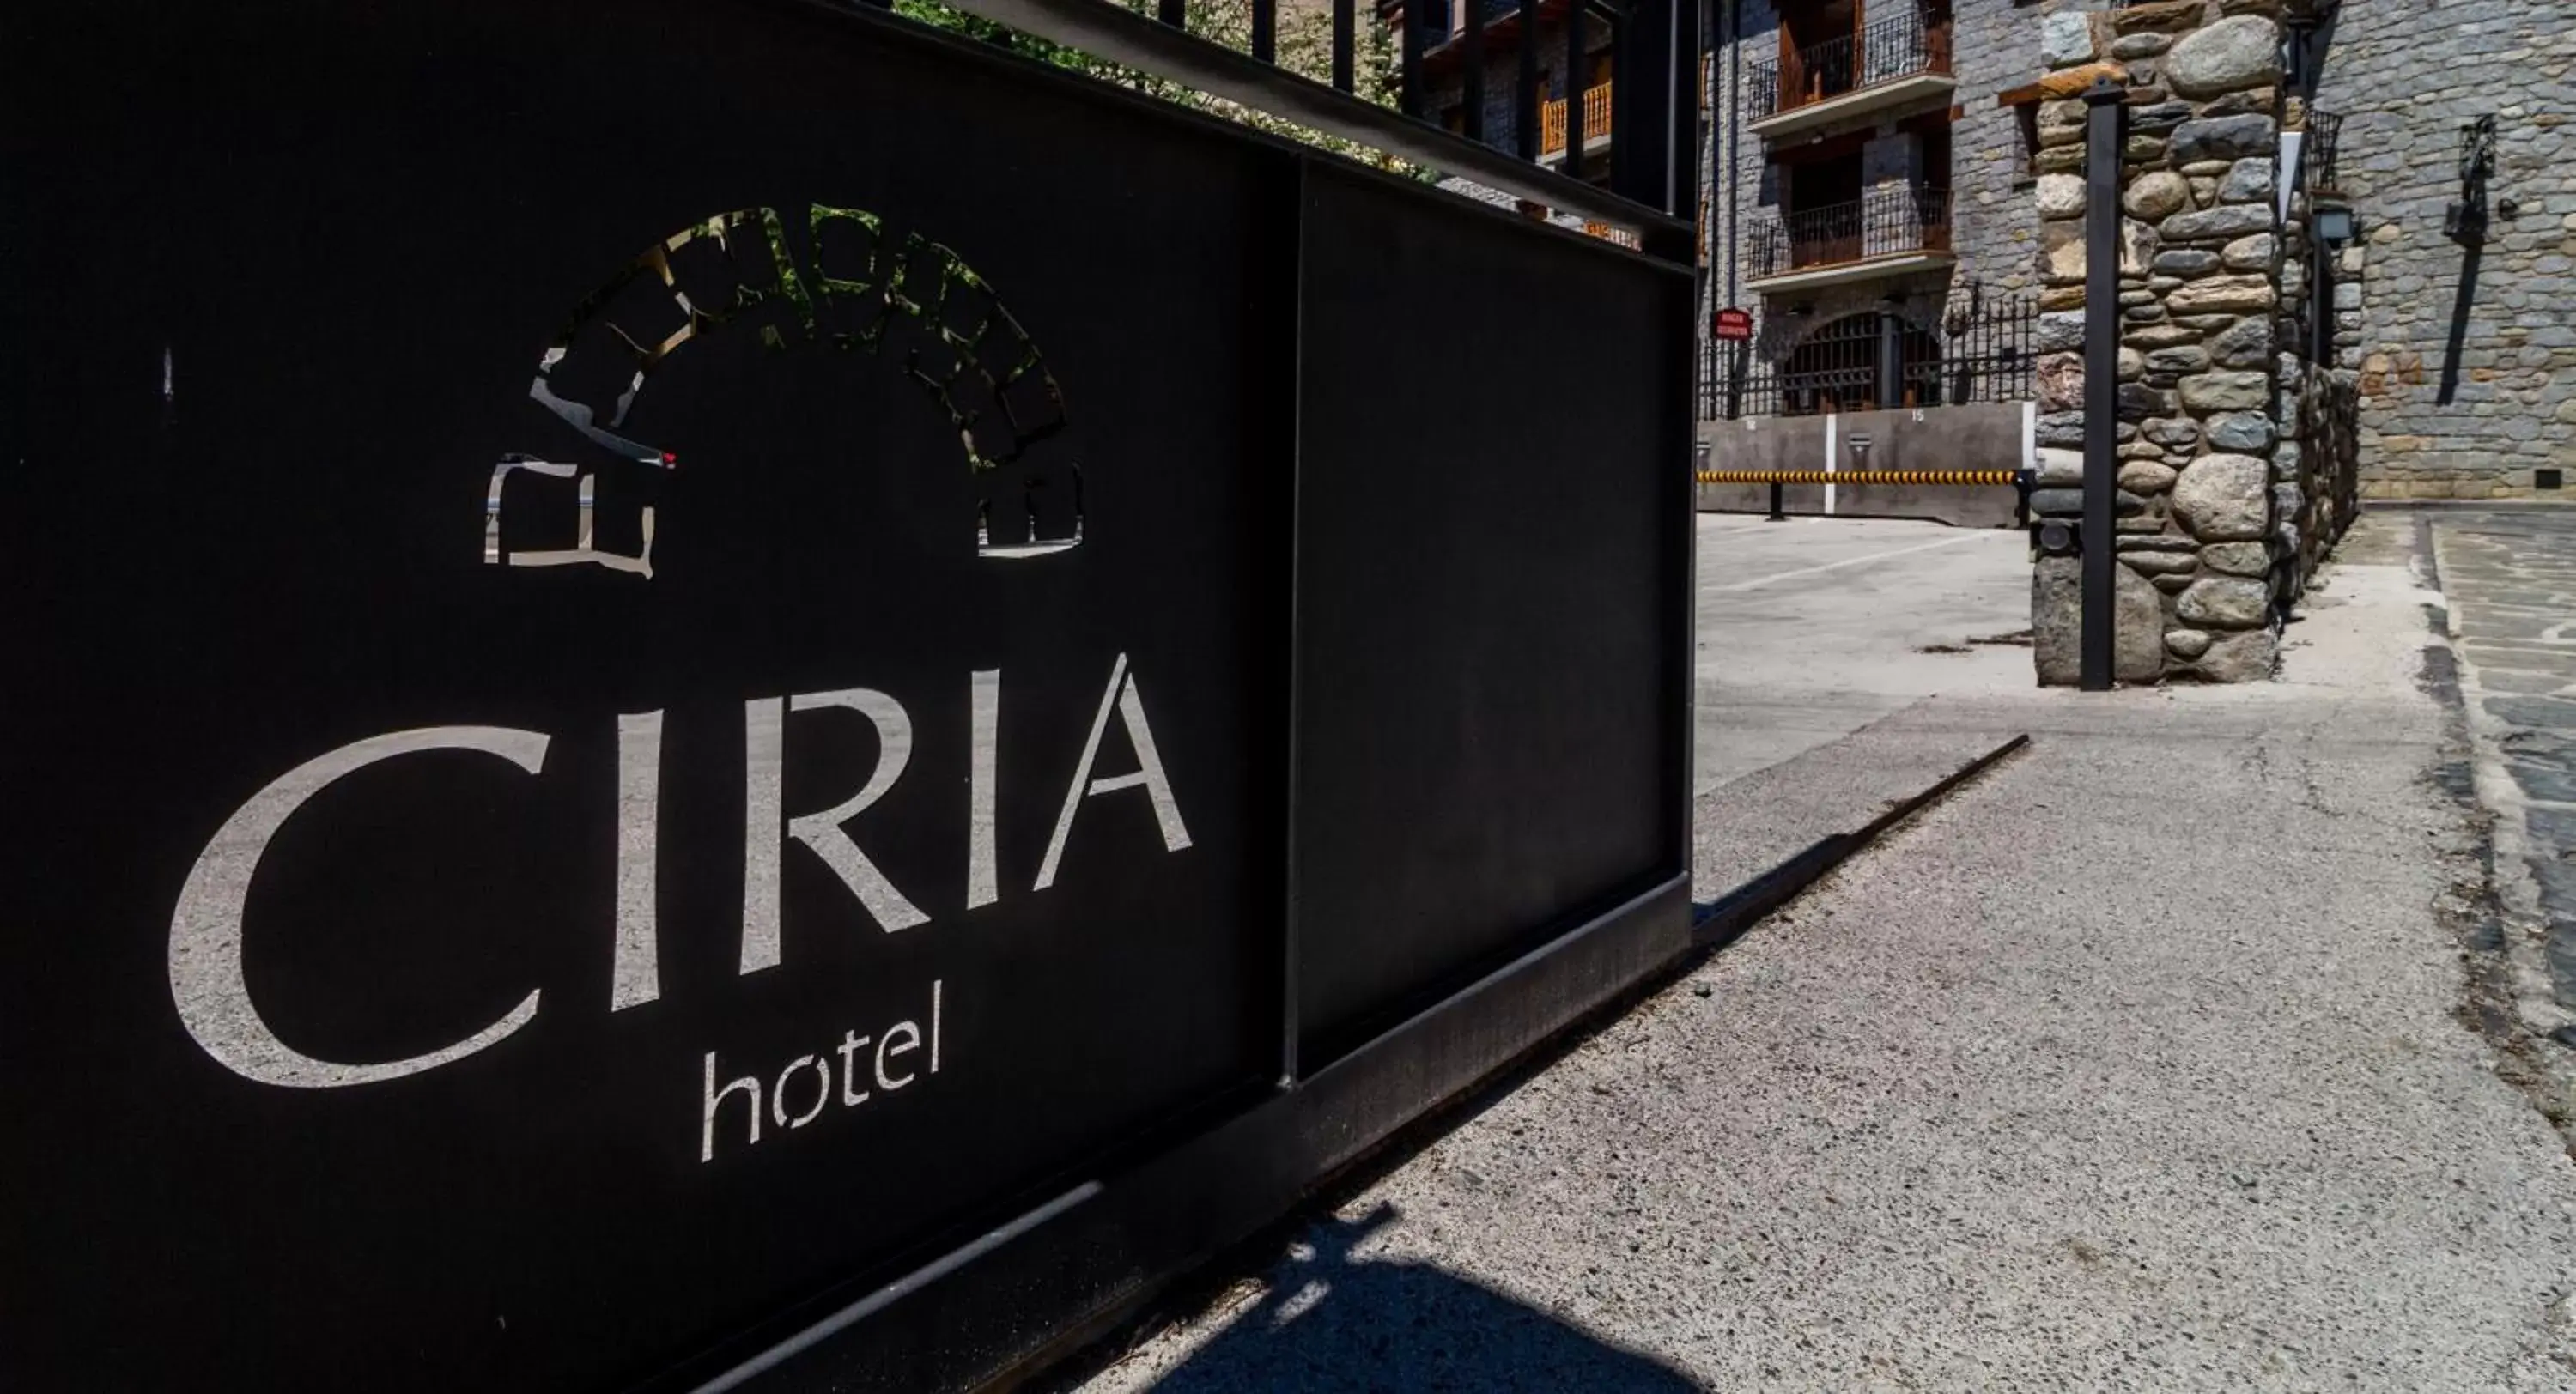 Property building in Hotel Ciria